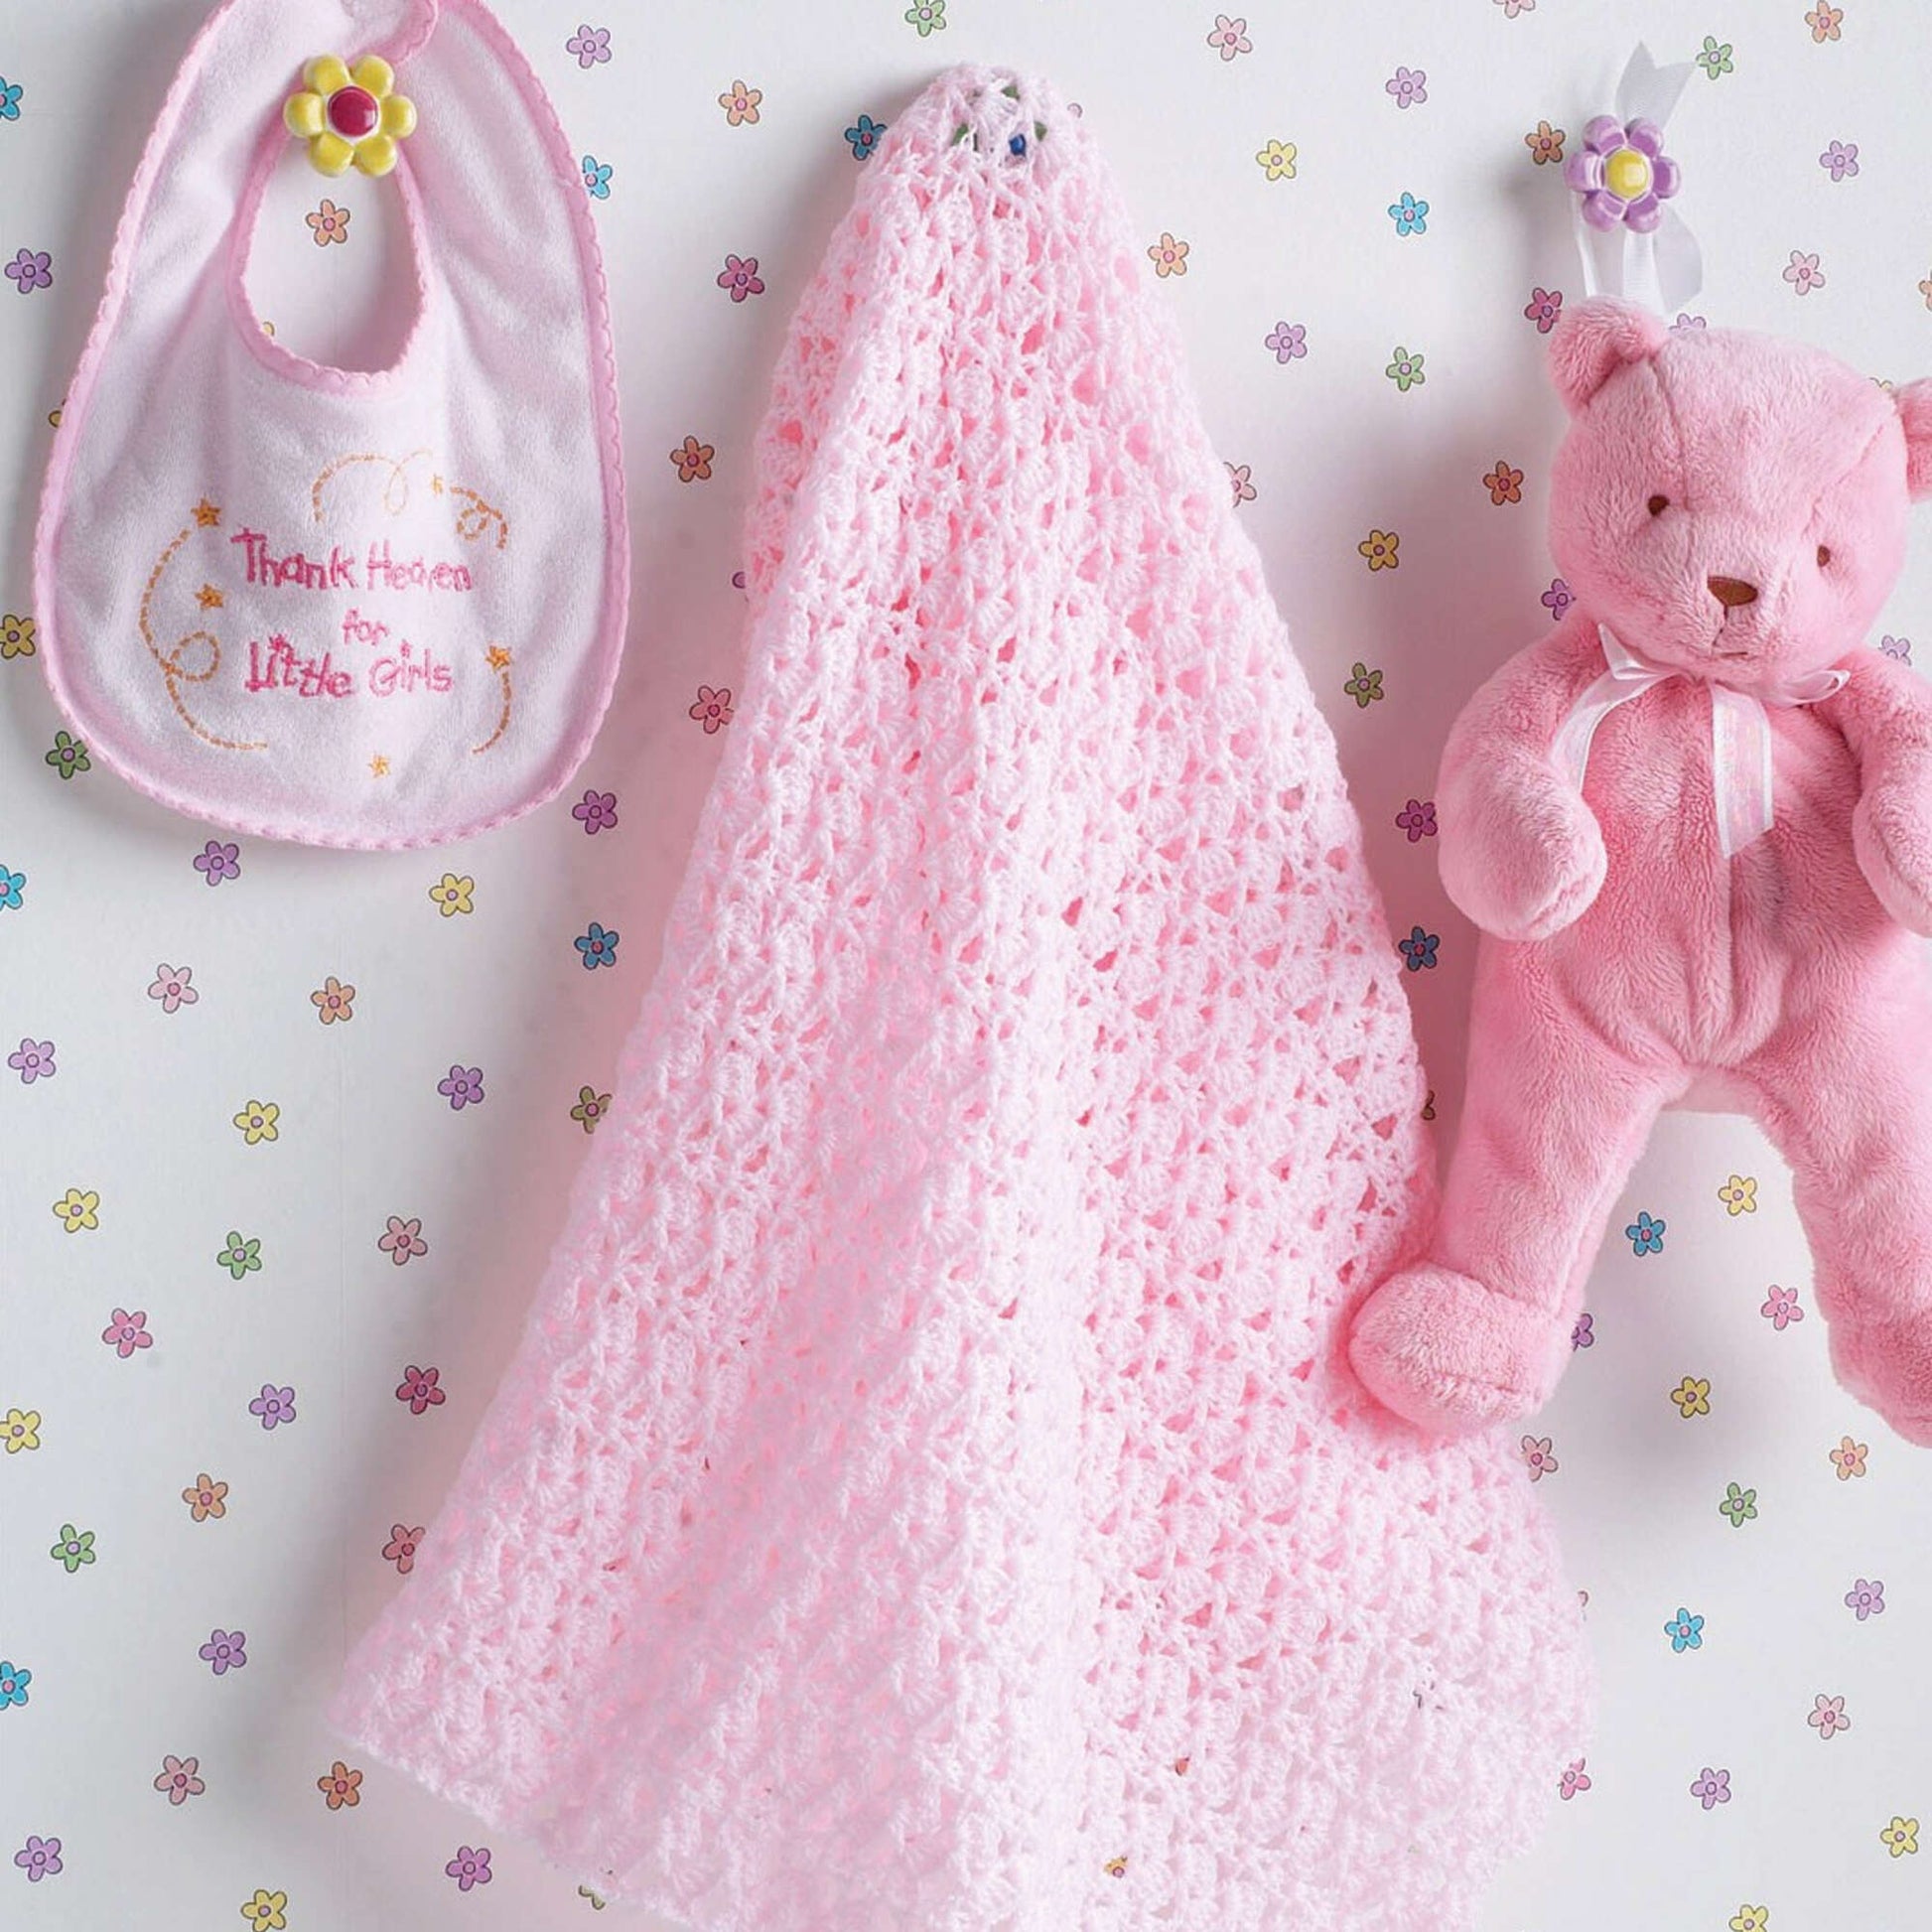 Free Bernat Beautiful Crochet Baby Blanket Pattern